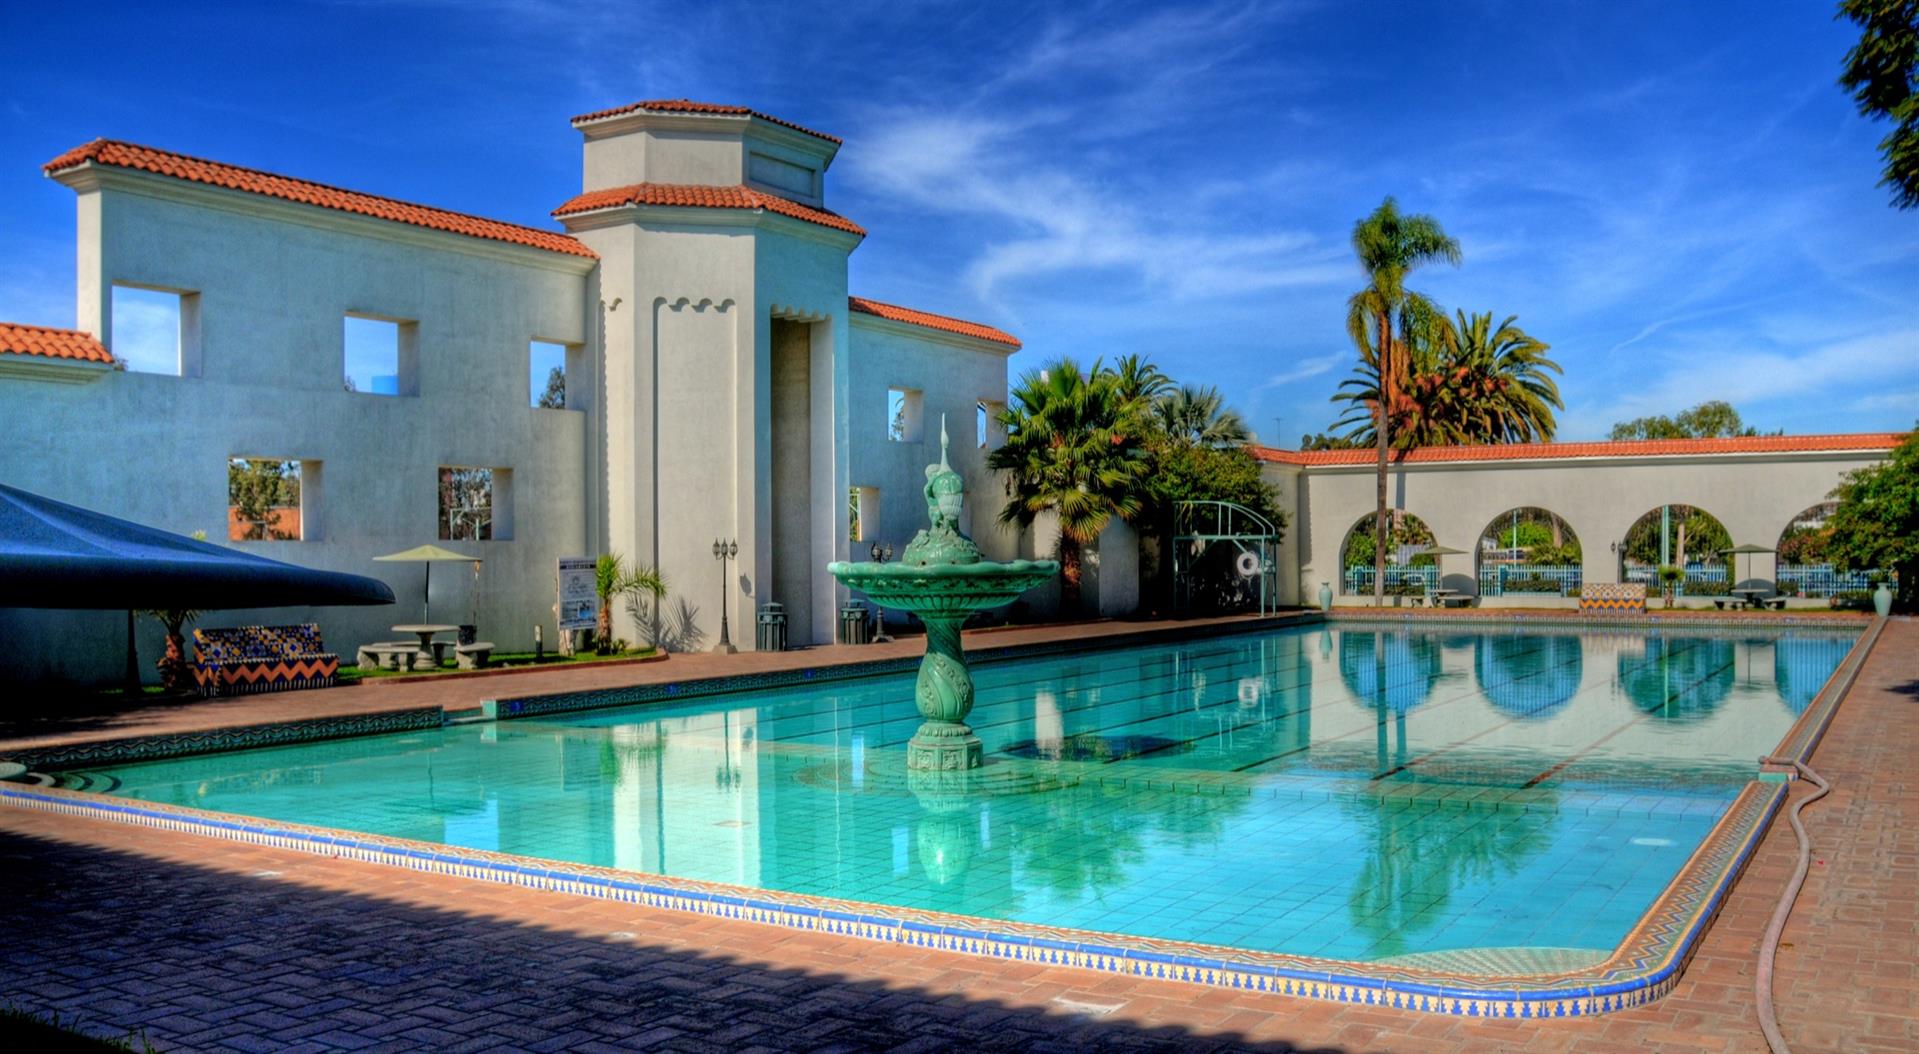 agua caliente casino paradise rewards club